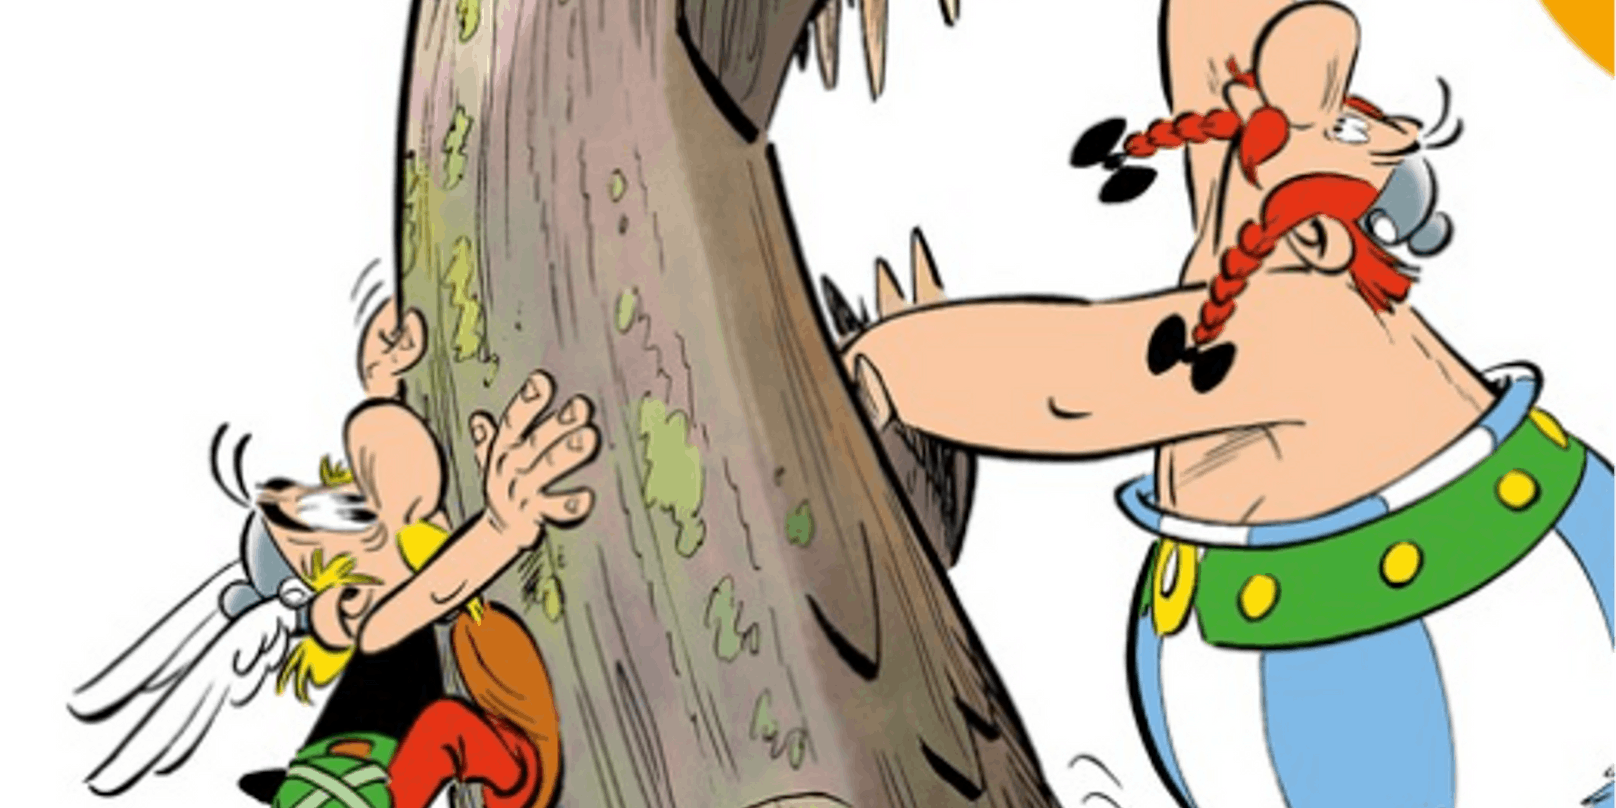 Der neue Asterix-Band heißt "Asterix und der Greif".